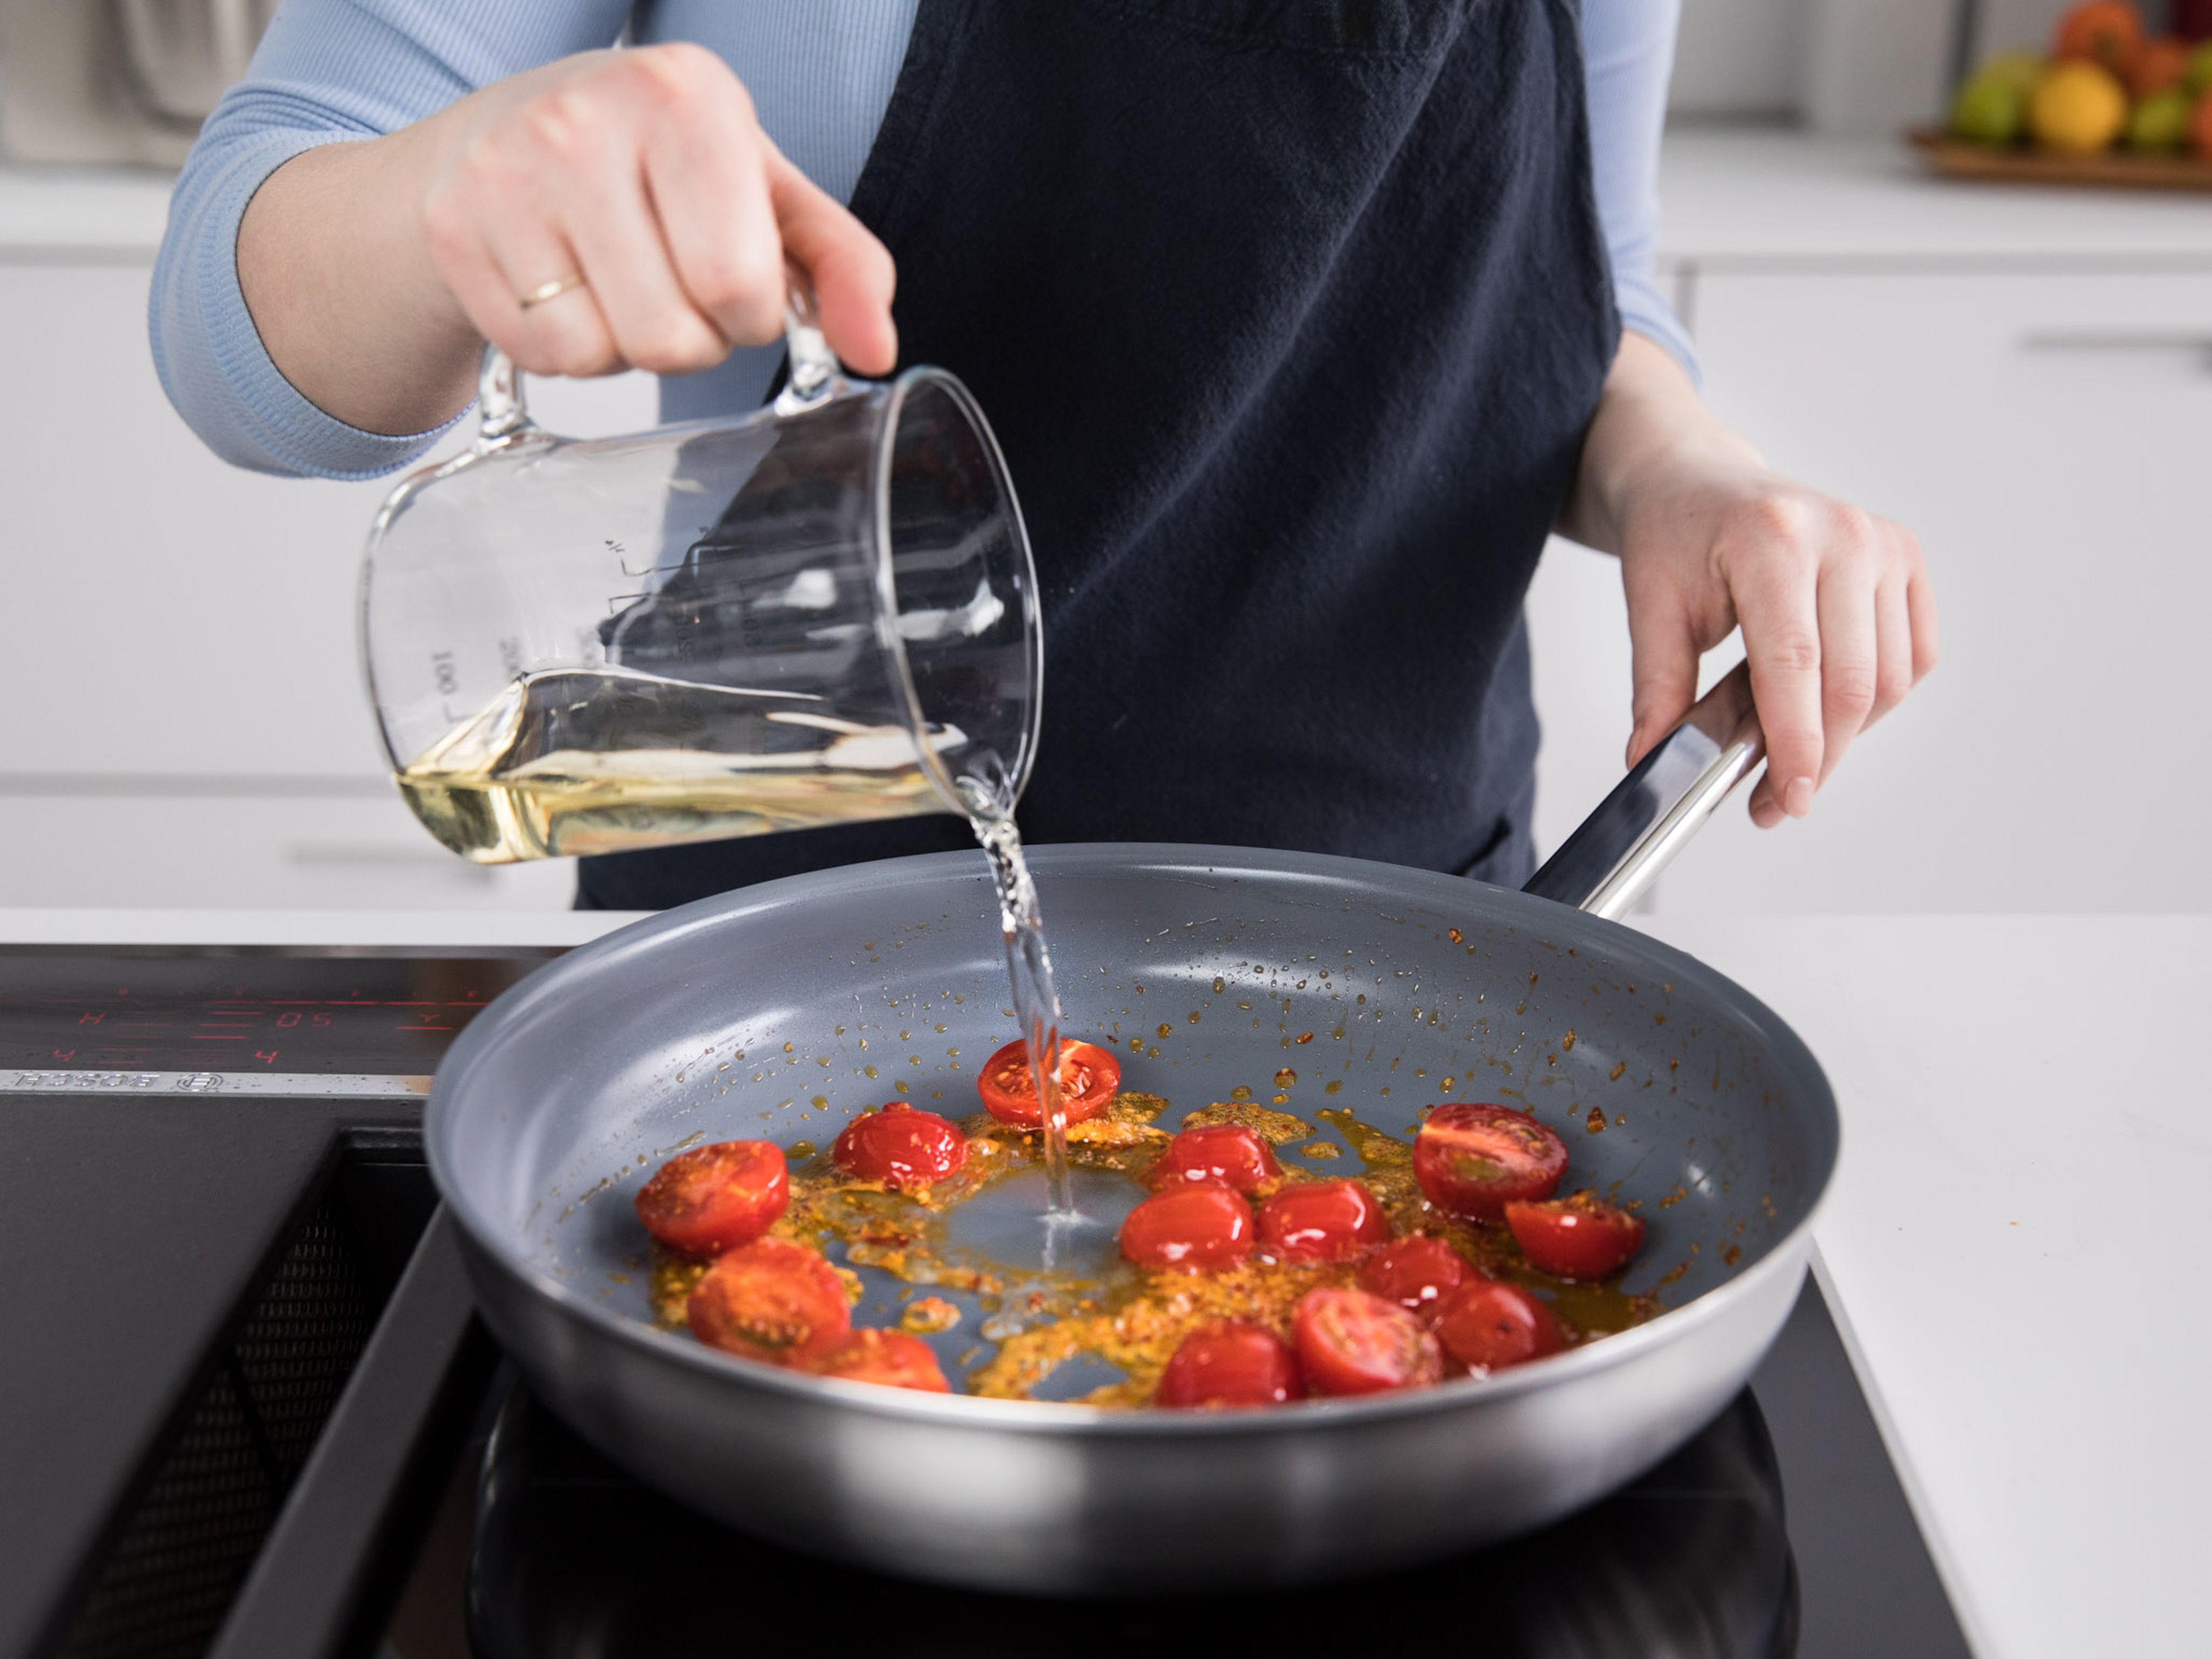 Olivenöl in einer Pfanne über mittlerer Hitze erwärmen. Knoblauch und Schalotte anschwitzen, bis sie glasig sind. Tomatenmark einrühren und die Kirschtomaten dazugeben. Ca. 1 - 2 Min. anbraten, oder bis das Tomatenmark dunkler wird und leicht anbrät. Mit Weißwein ablöschen und ca. 5 Min. köcheln lassen.